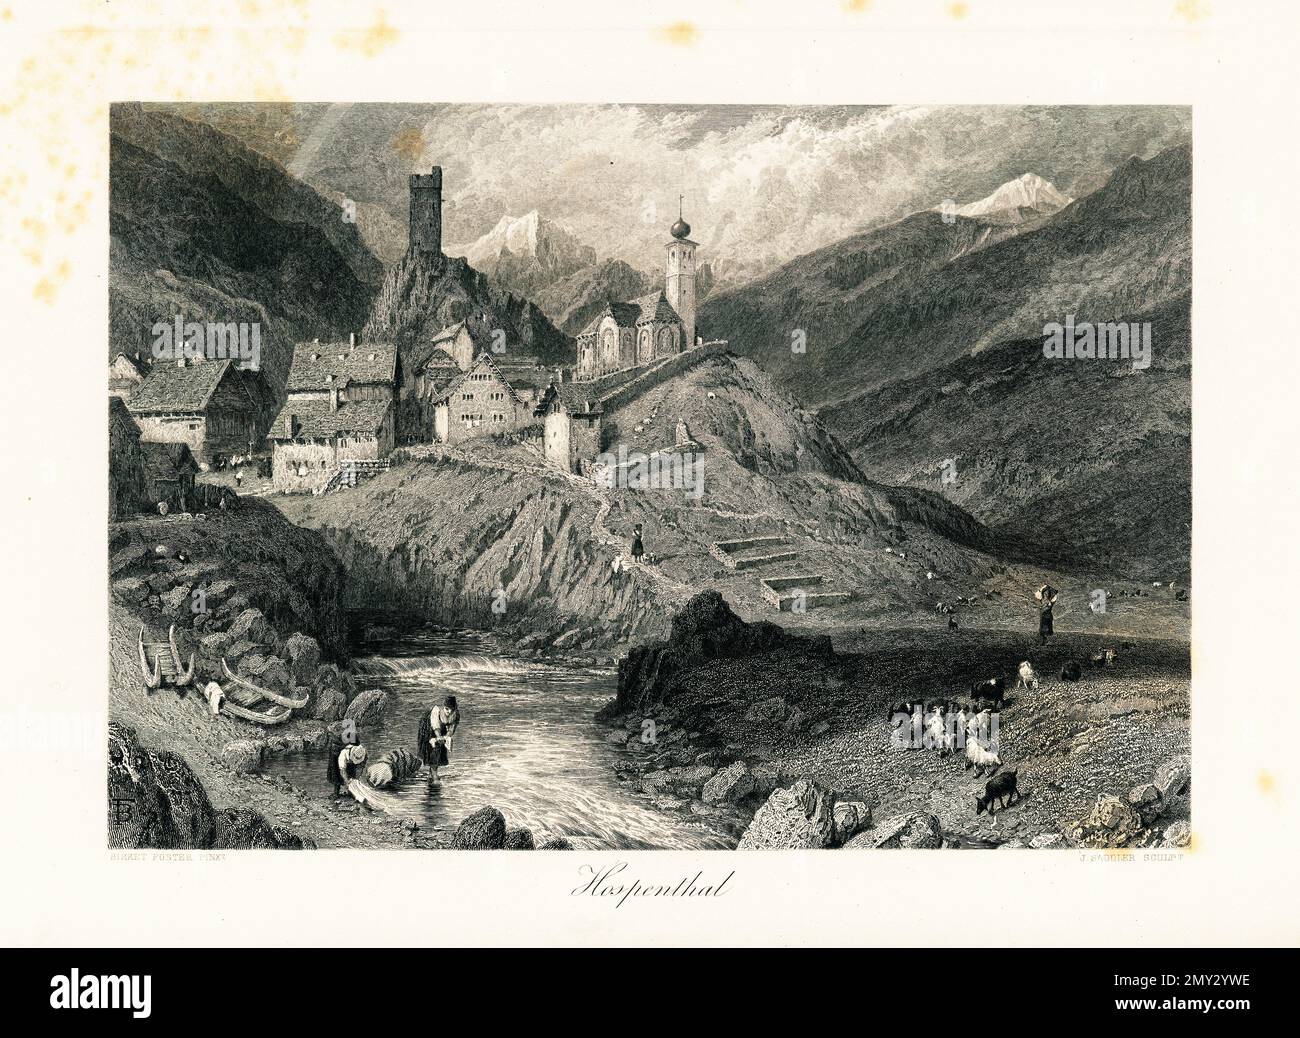 Antica illustrazione di Hospental, una città nel cantone di Uri, Svizzera. Incisione pubblicata in picturesque Europe, Vol. III (Cassell & Company, L Foto Stock